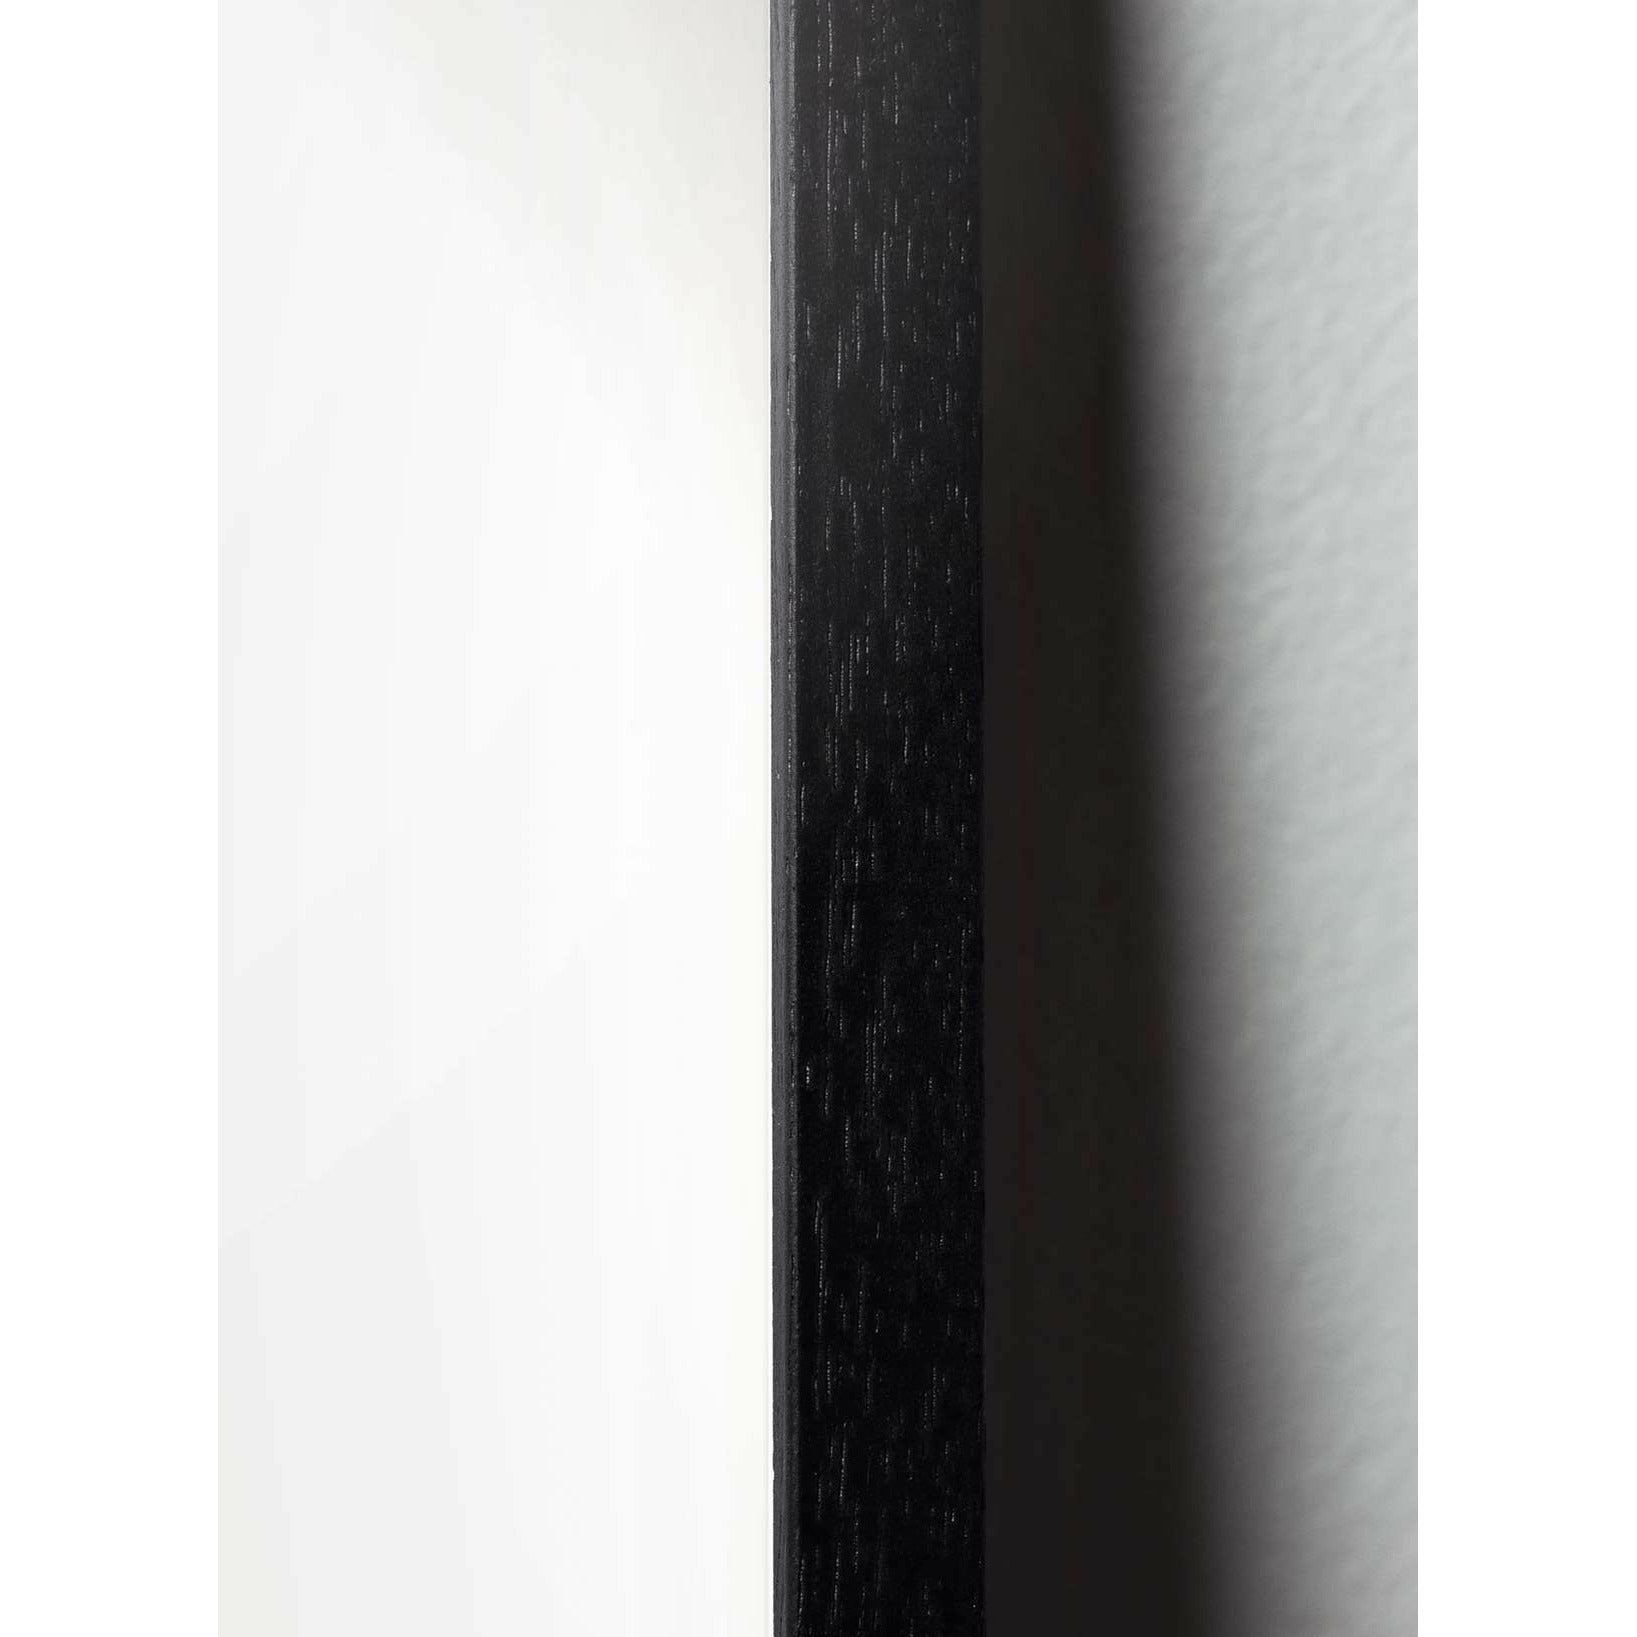 brainchild Snoweglaug -Klassiker, Rahmen in schwarz lackiertem Holz 70x100 cm, grüner Hintergrund